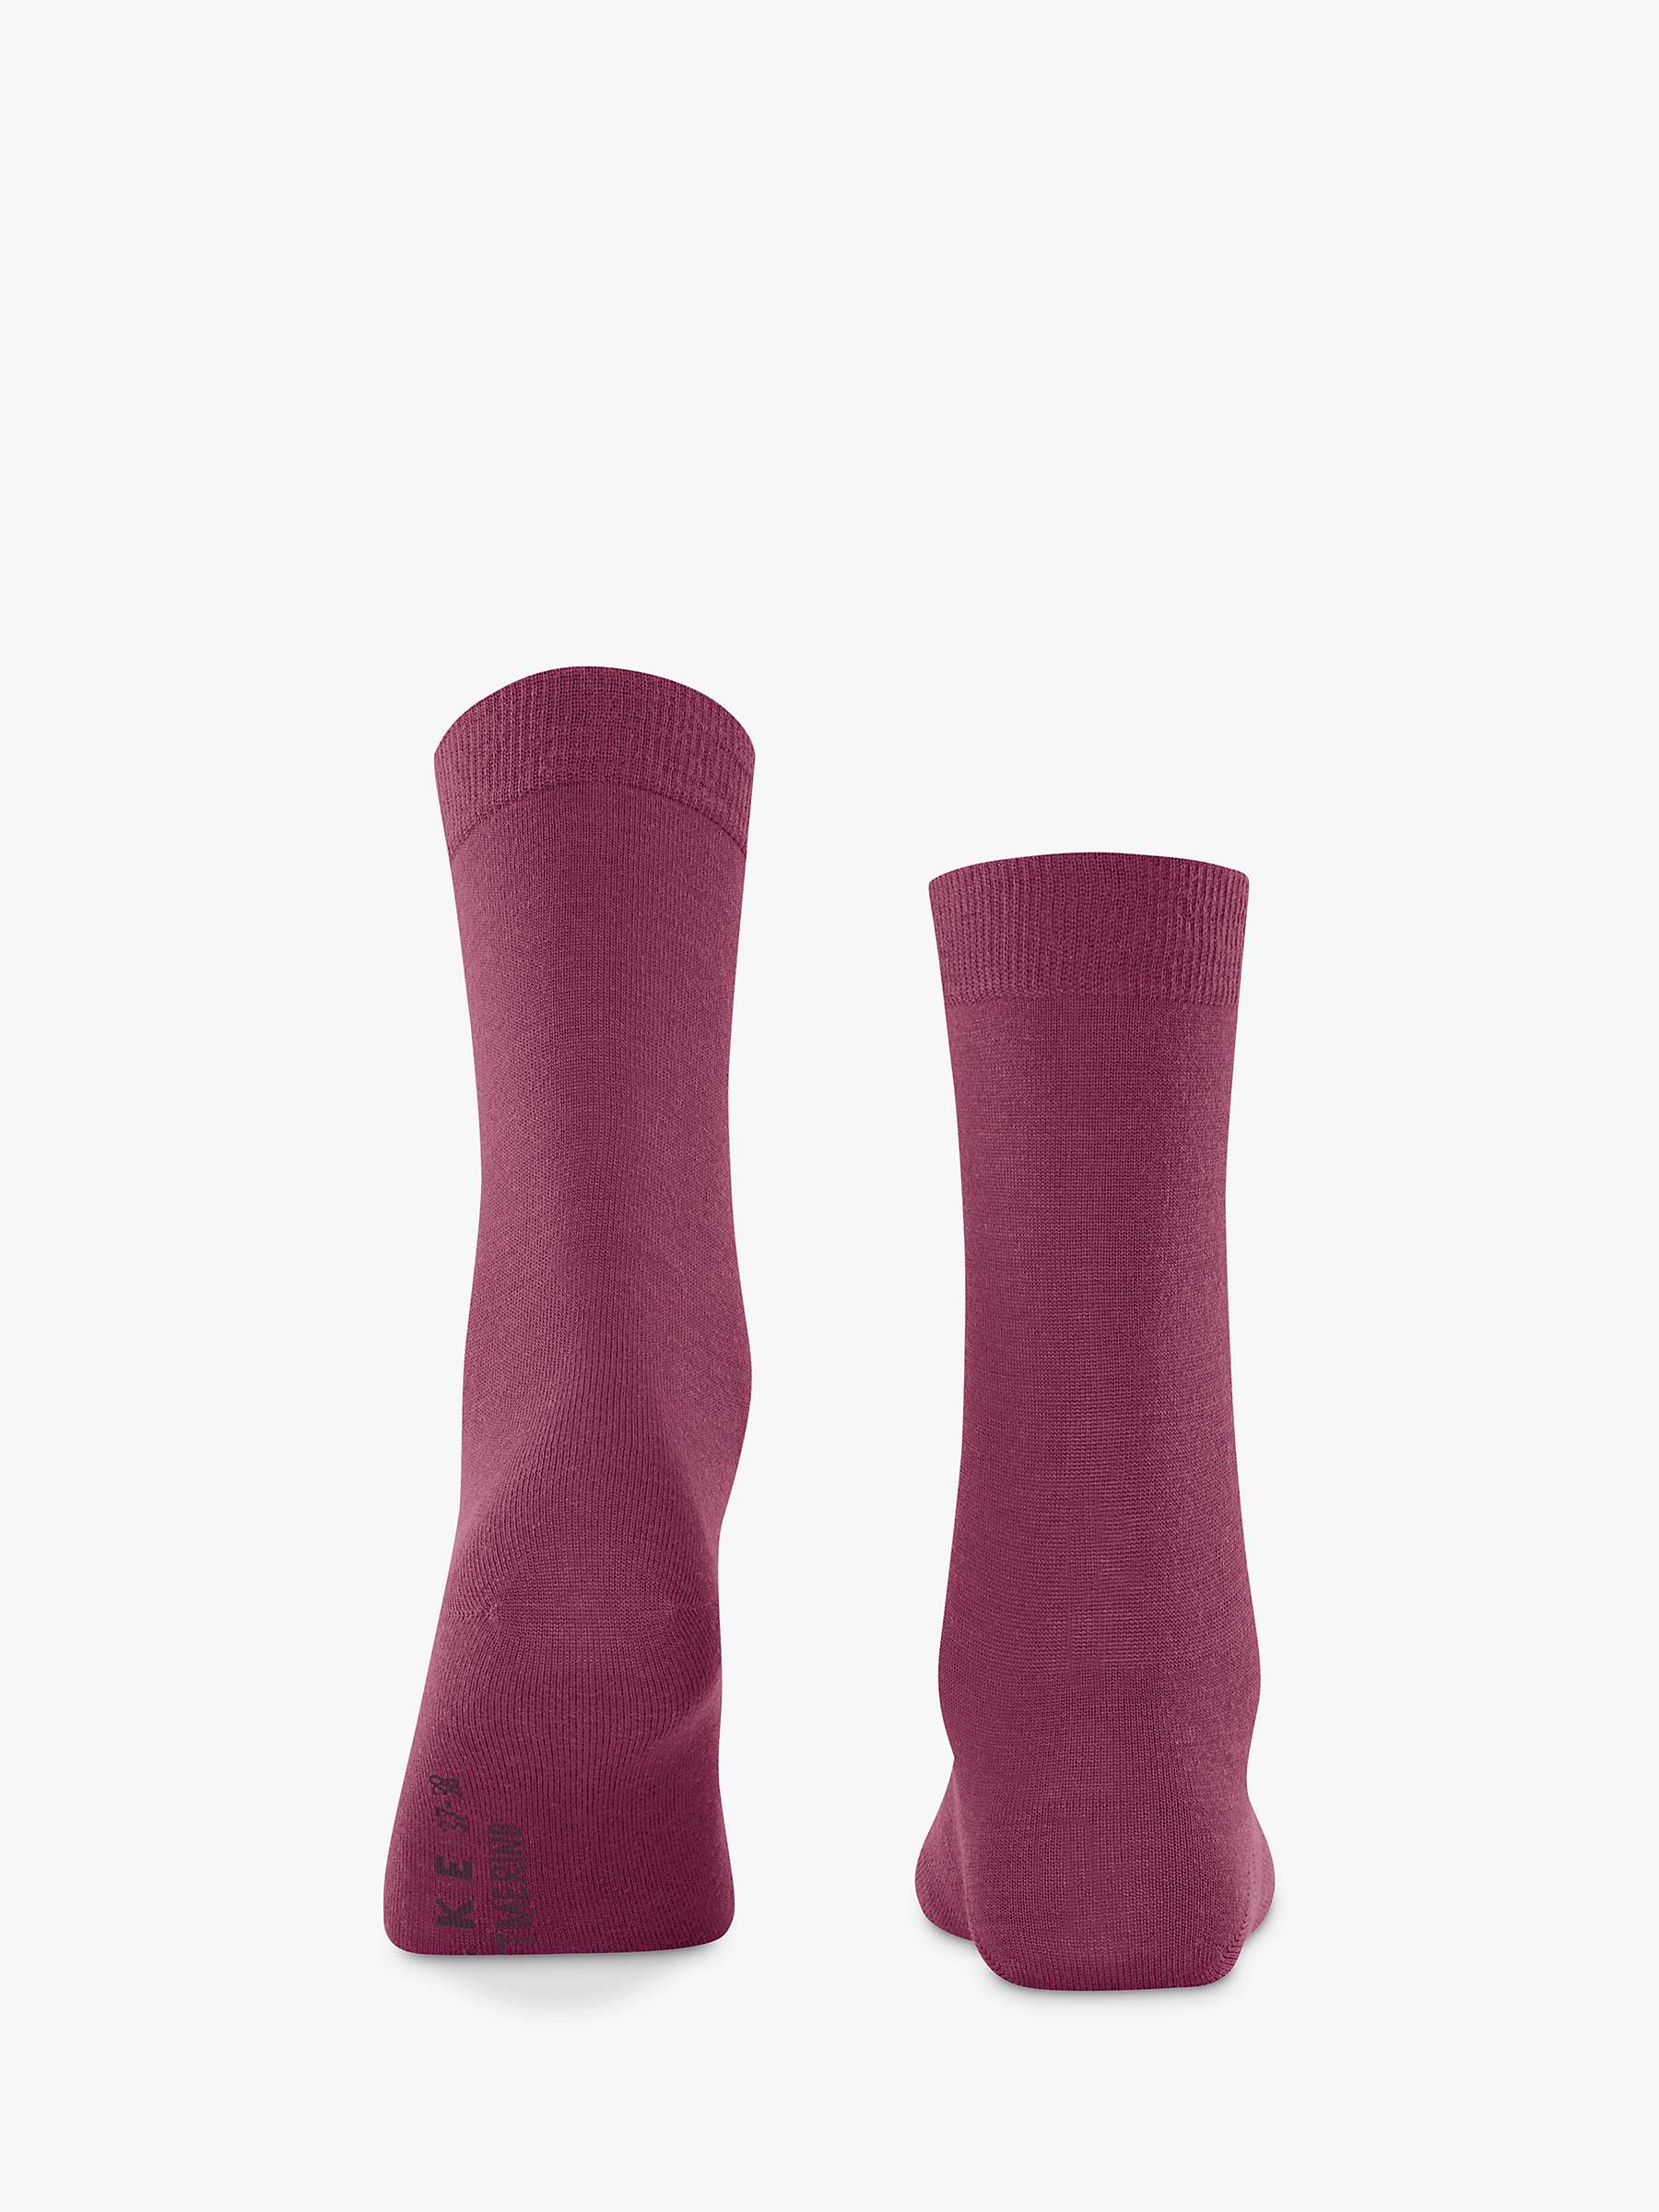 Buy FALKE Soft Merino Wool Ankle Socks Online at johnlewis.com